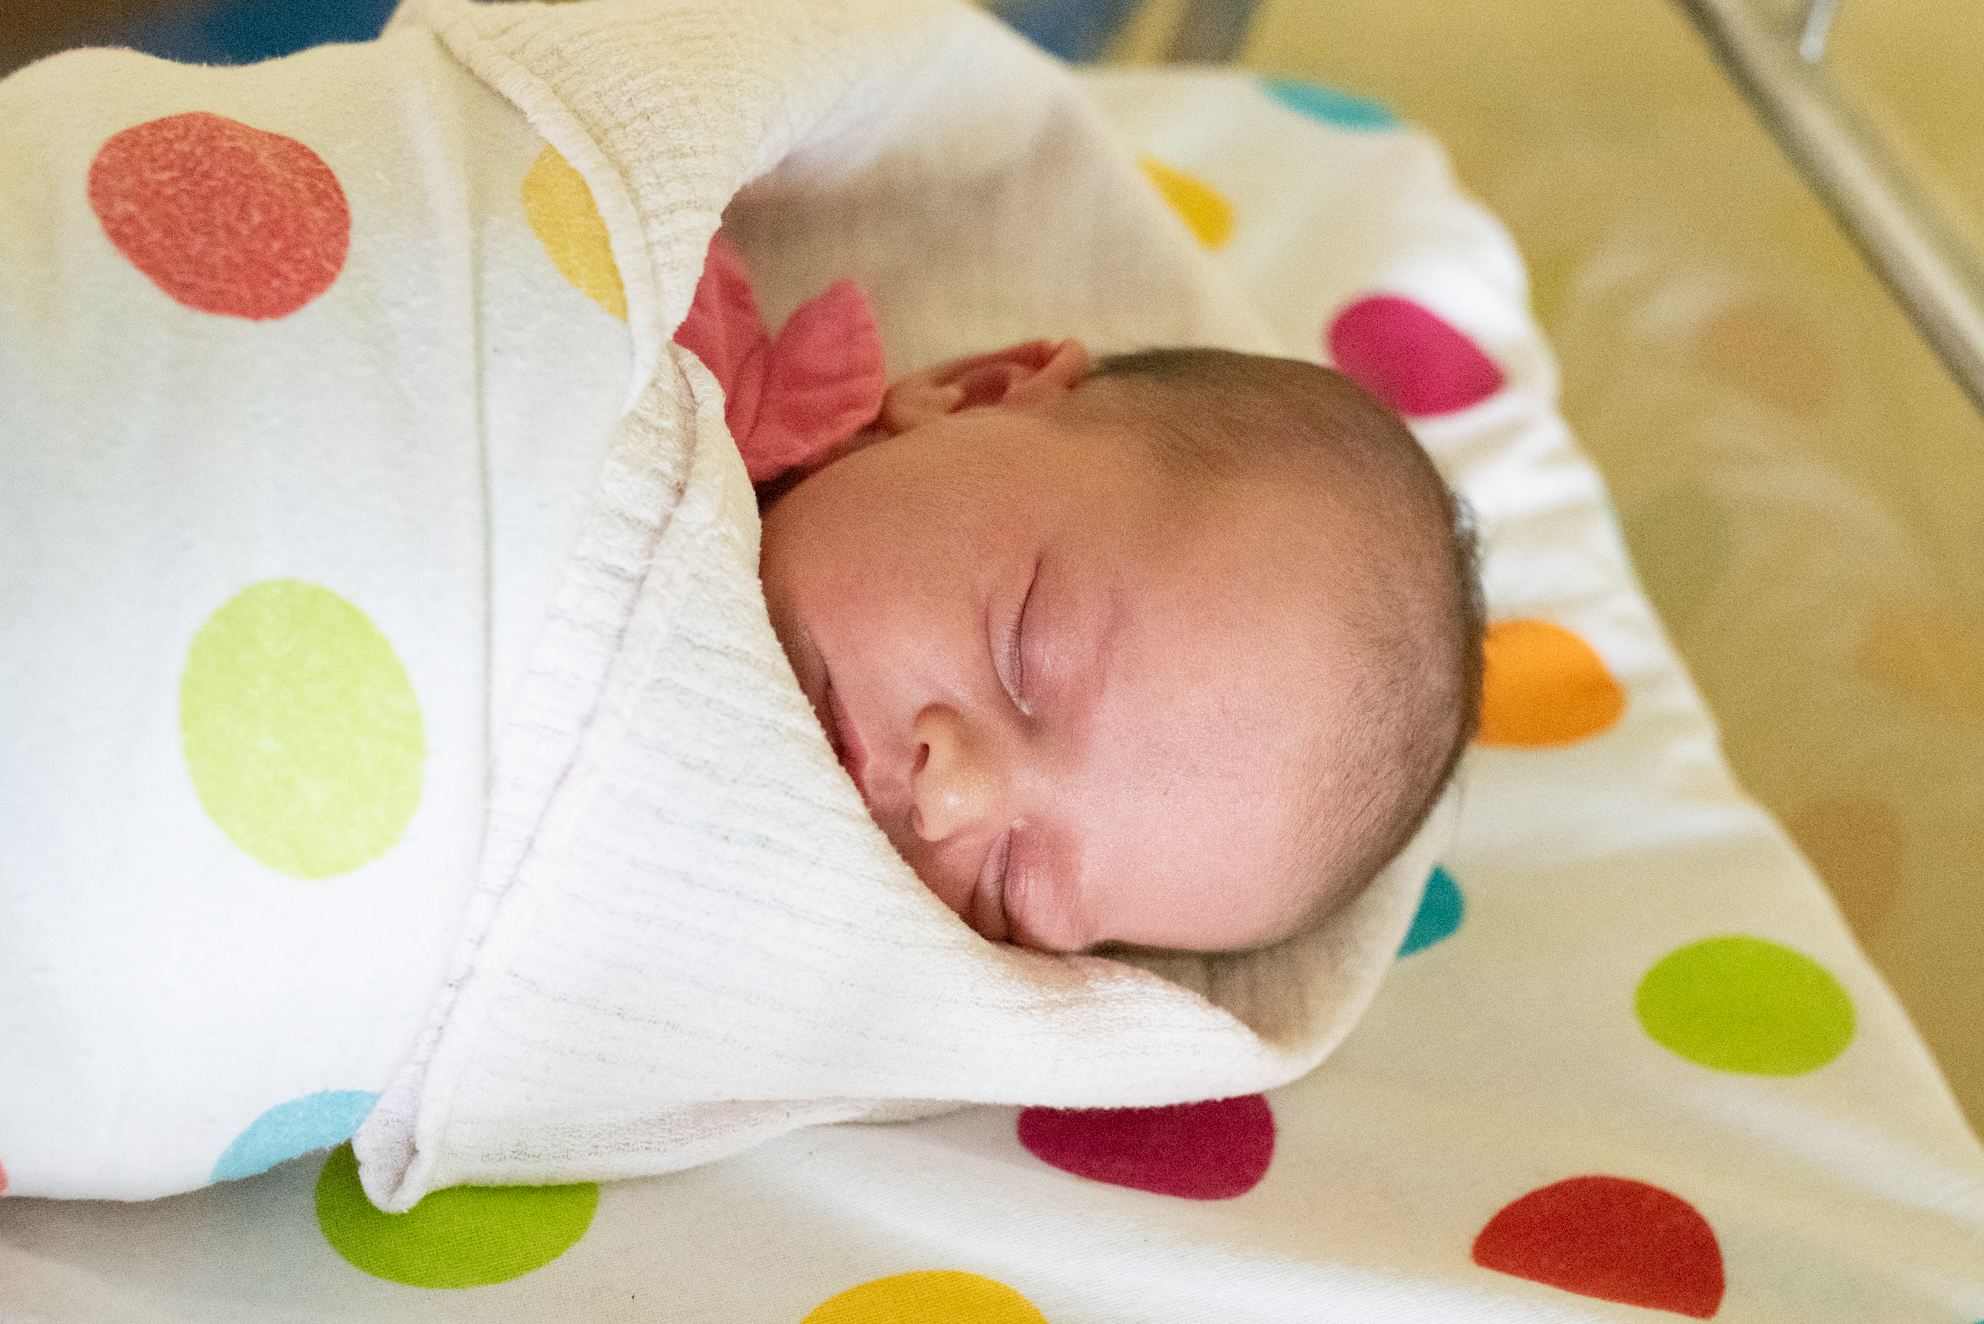 Mała Monika Oślizło urodziła się 4.12. o godz. 14.25. Ważyła 3640 g i mierzyła 58 cm. Jej rodzicami są Ewelina i Mateusz z Połomi. W domu na Monikę czekają dwie starsze siostry, Paulinka i Agatka.